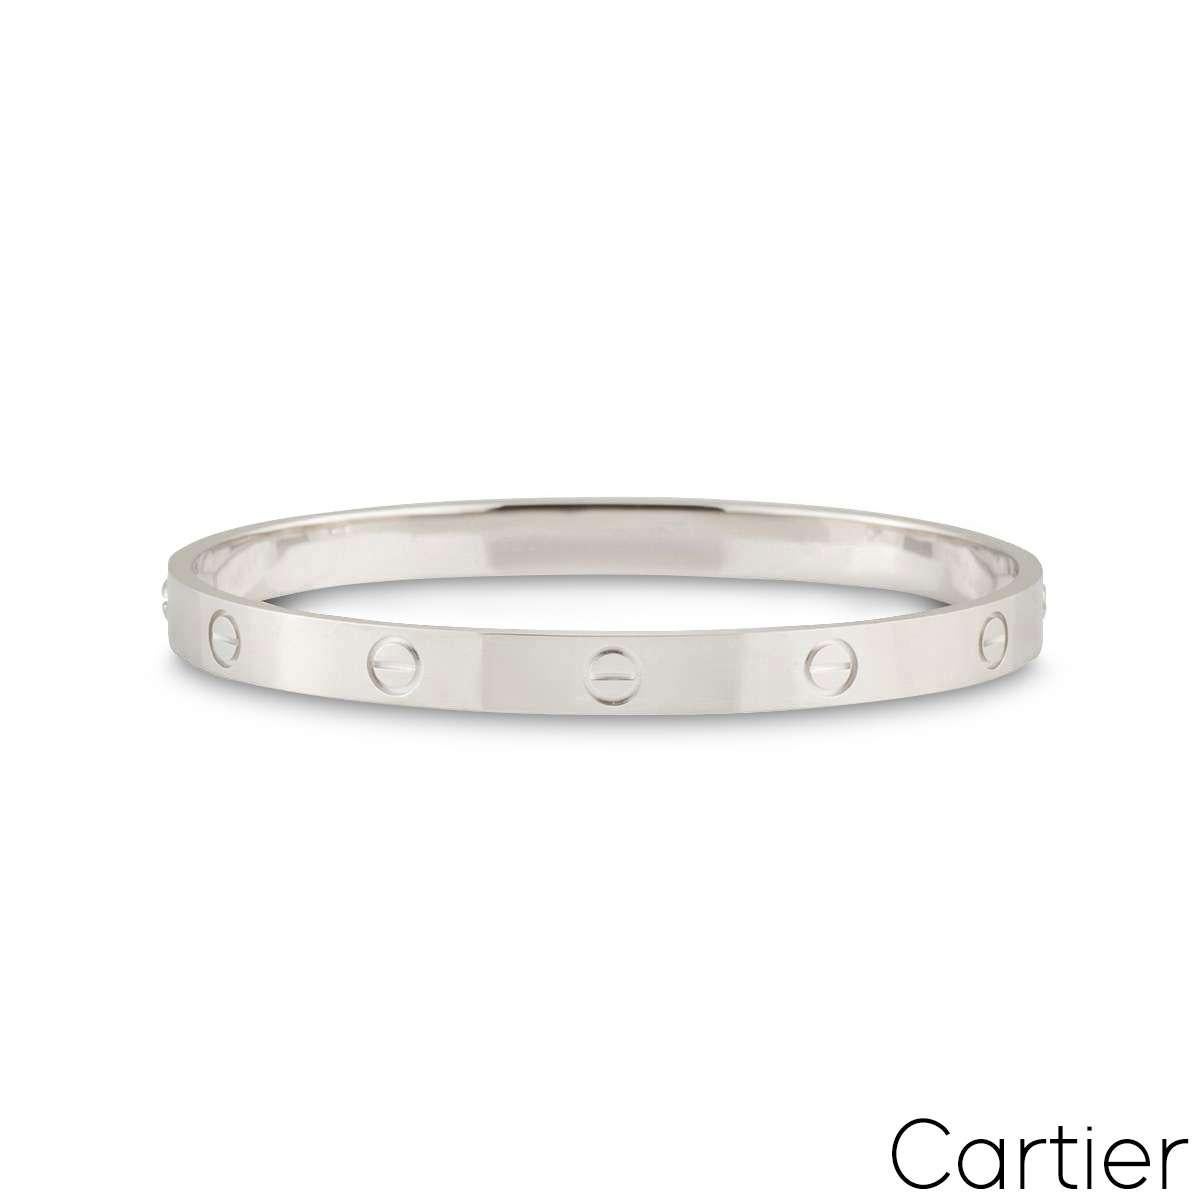 Un bracelet Cartier en or blanc 18 carats de la collection Love. Le bracelet comporte les motifs emblématiques de la vis sur le bord extérieur. Le bracelet est de taille 18, présente le nouveau style de fixation à vis et a un poids brut de 33,40